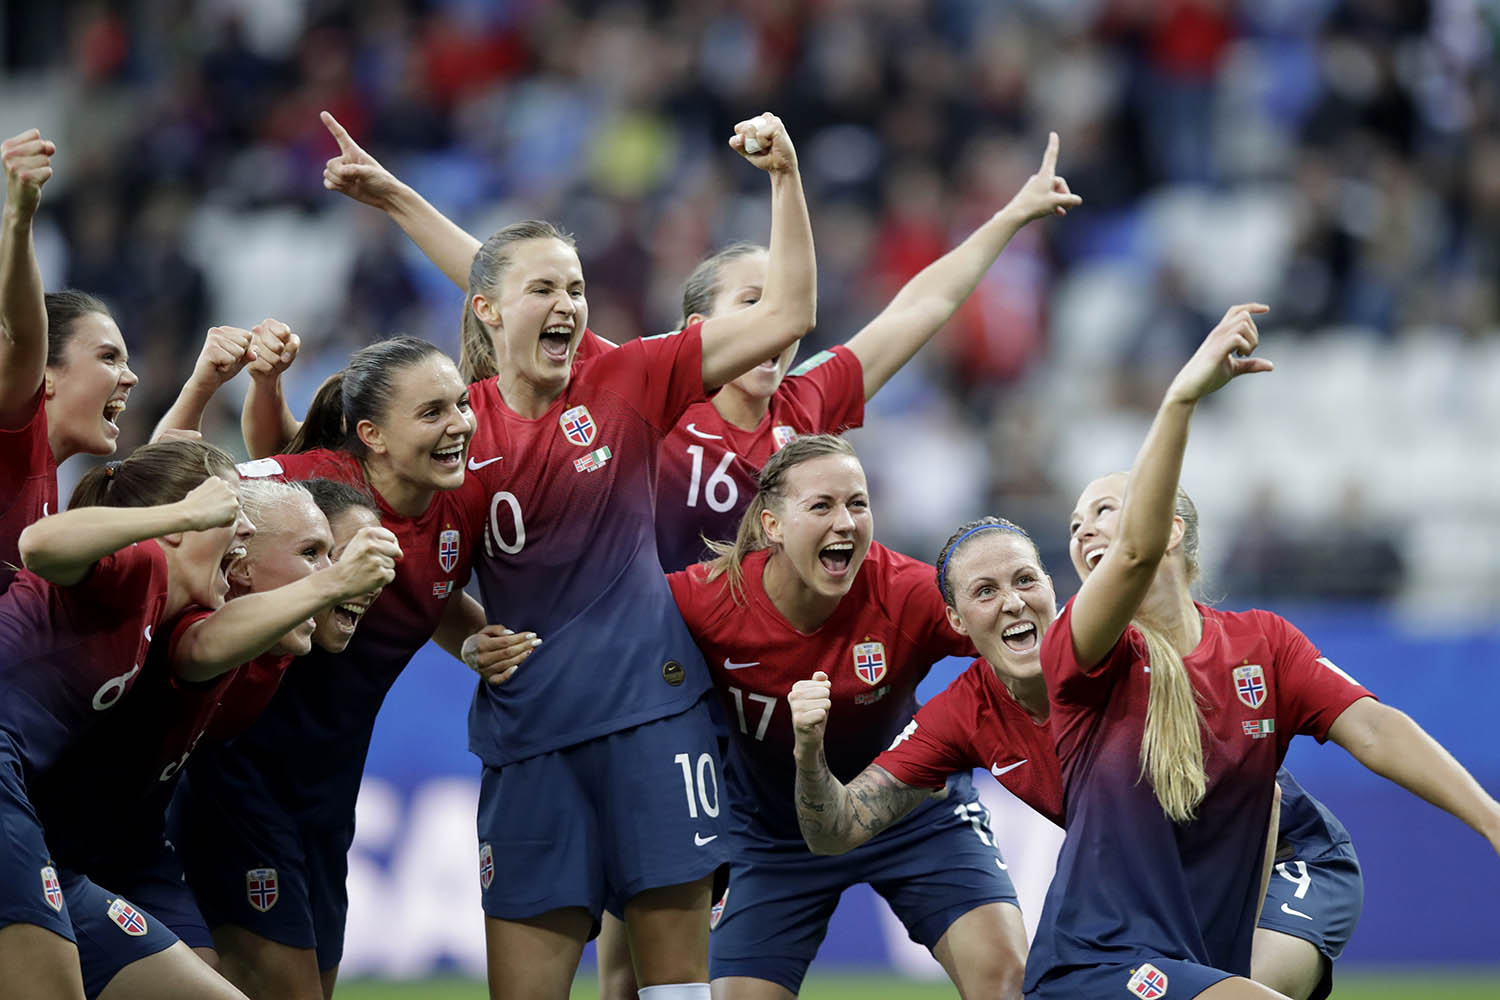 שחקניות נבחרת נורווגיה בכדורגל. השוו את שכרן לנבחרת הגברים בשנת 2018 (צילום: AP Photo/Alessandra Tarantino)